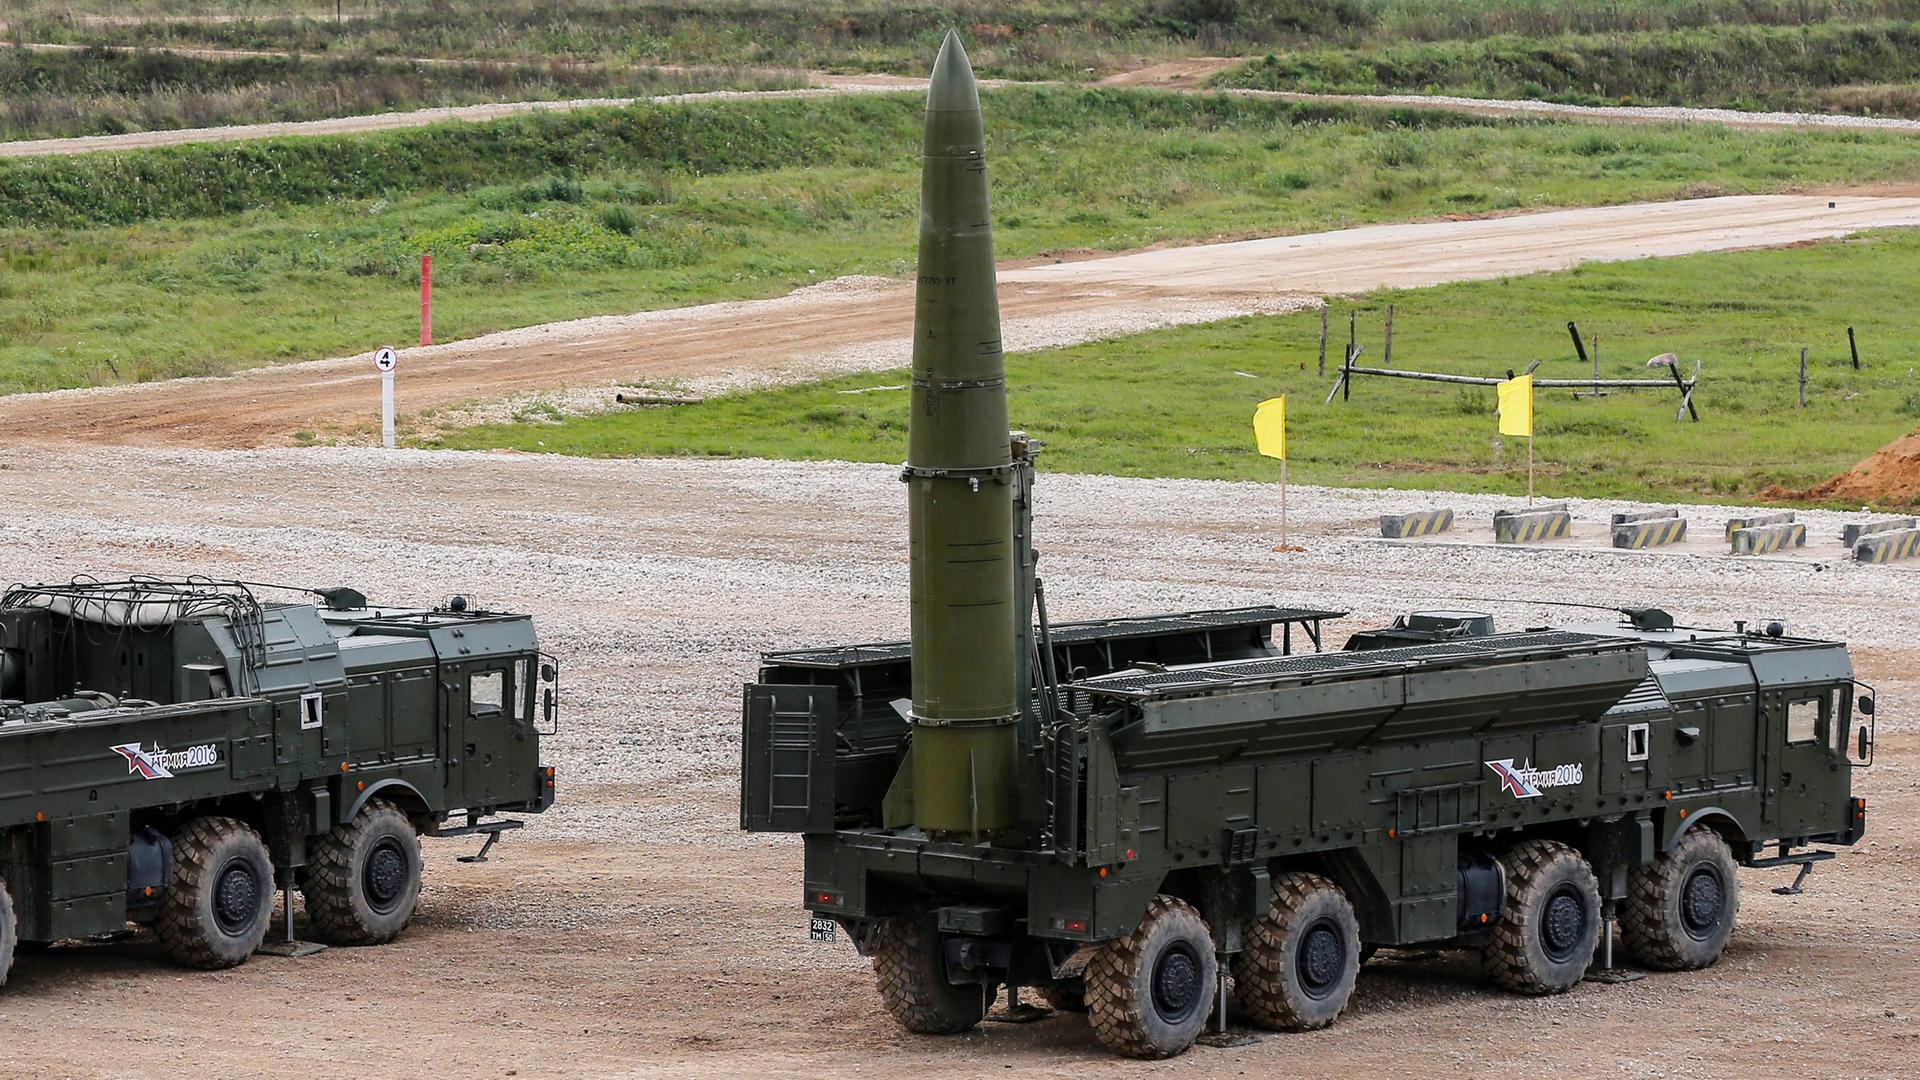 Auf einem Truppenübungsplatz ist eine russische Rakete mit Atomsprengkopf auf einem Militärfahrzeug montiert. Die Rakete zeigt senkrecht in den Himmel, als wäre sie bereit zum Abschuss.